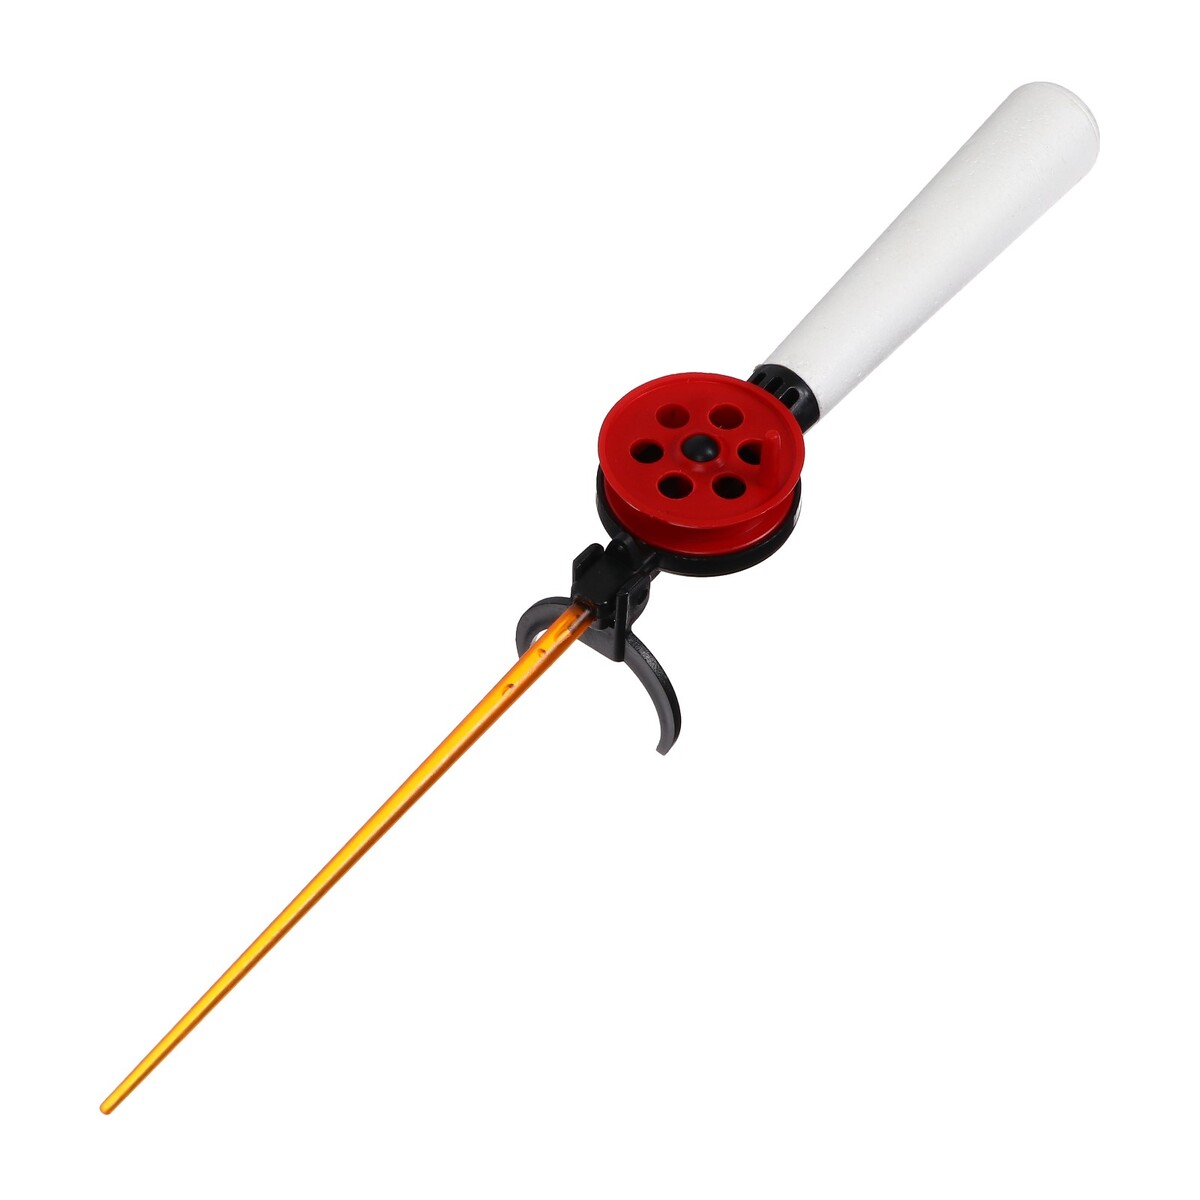 Удочка зимняя, ручка пенопласт длиной 130 мм, hfb-9b удочка зимняя балалайка красный hfb 18